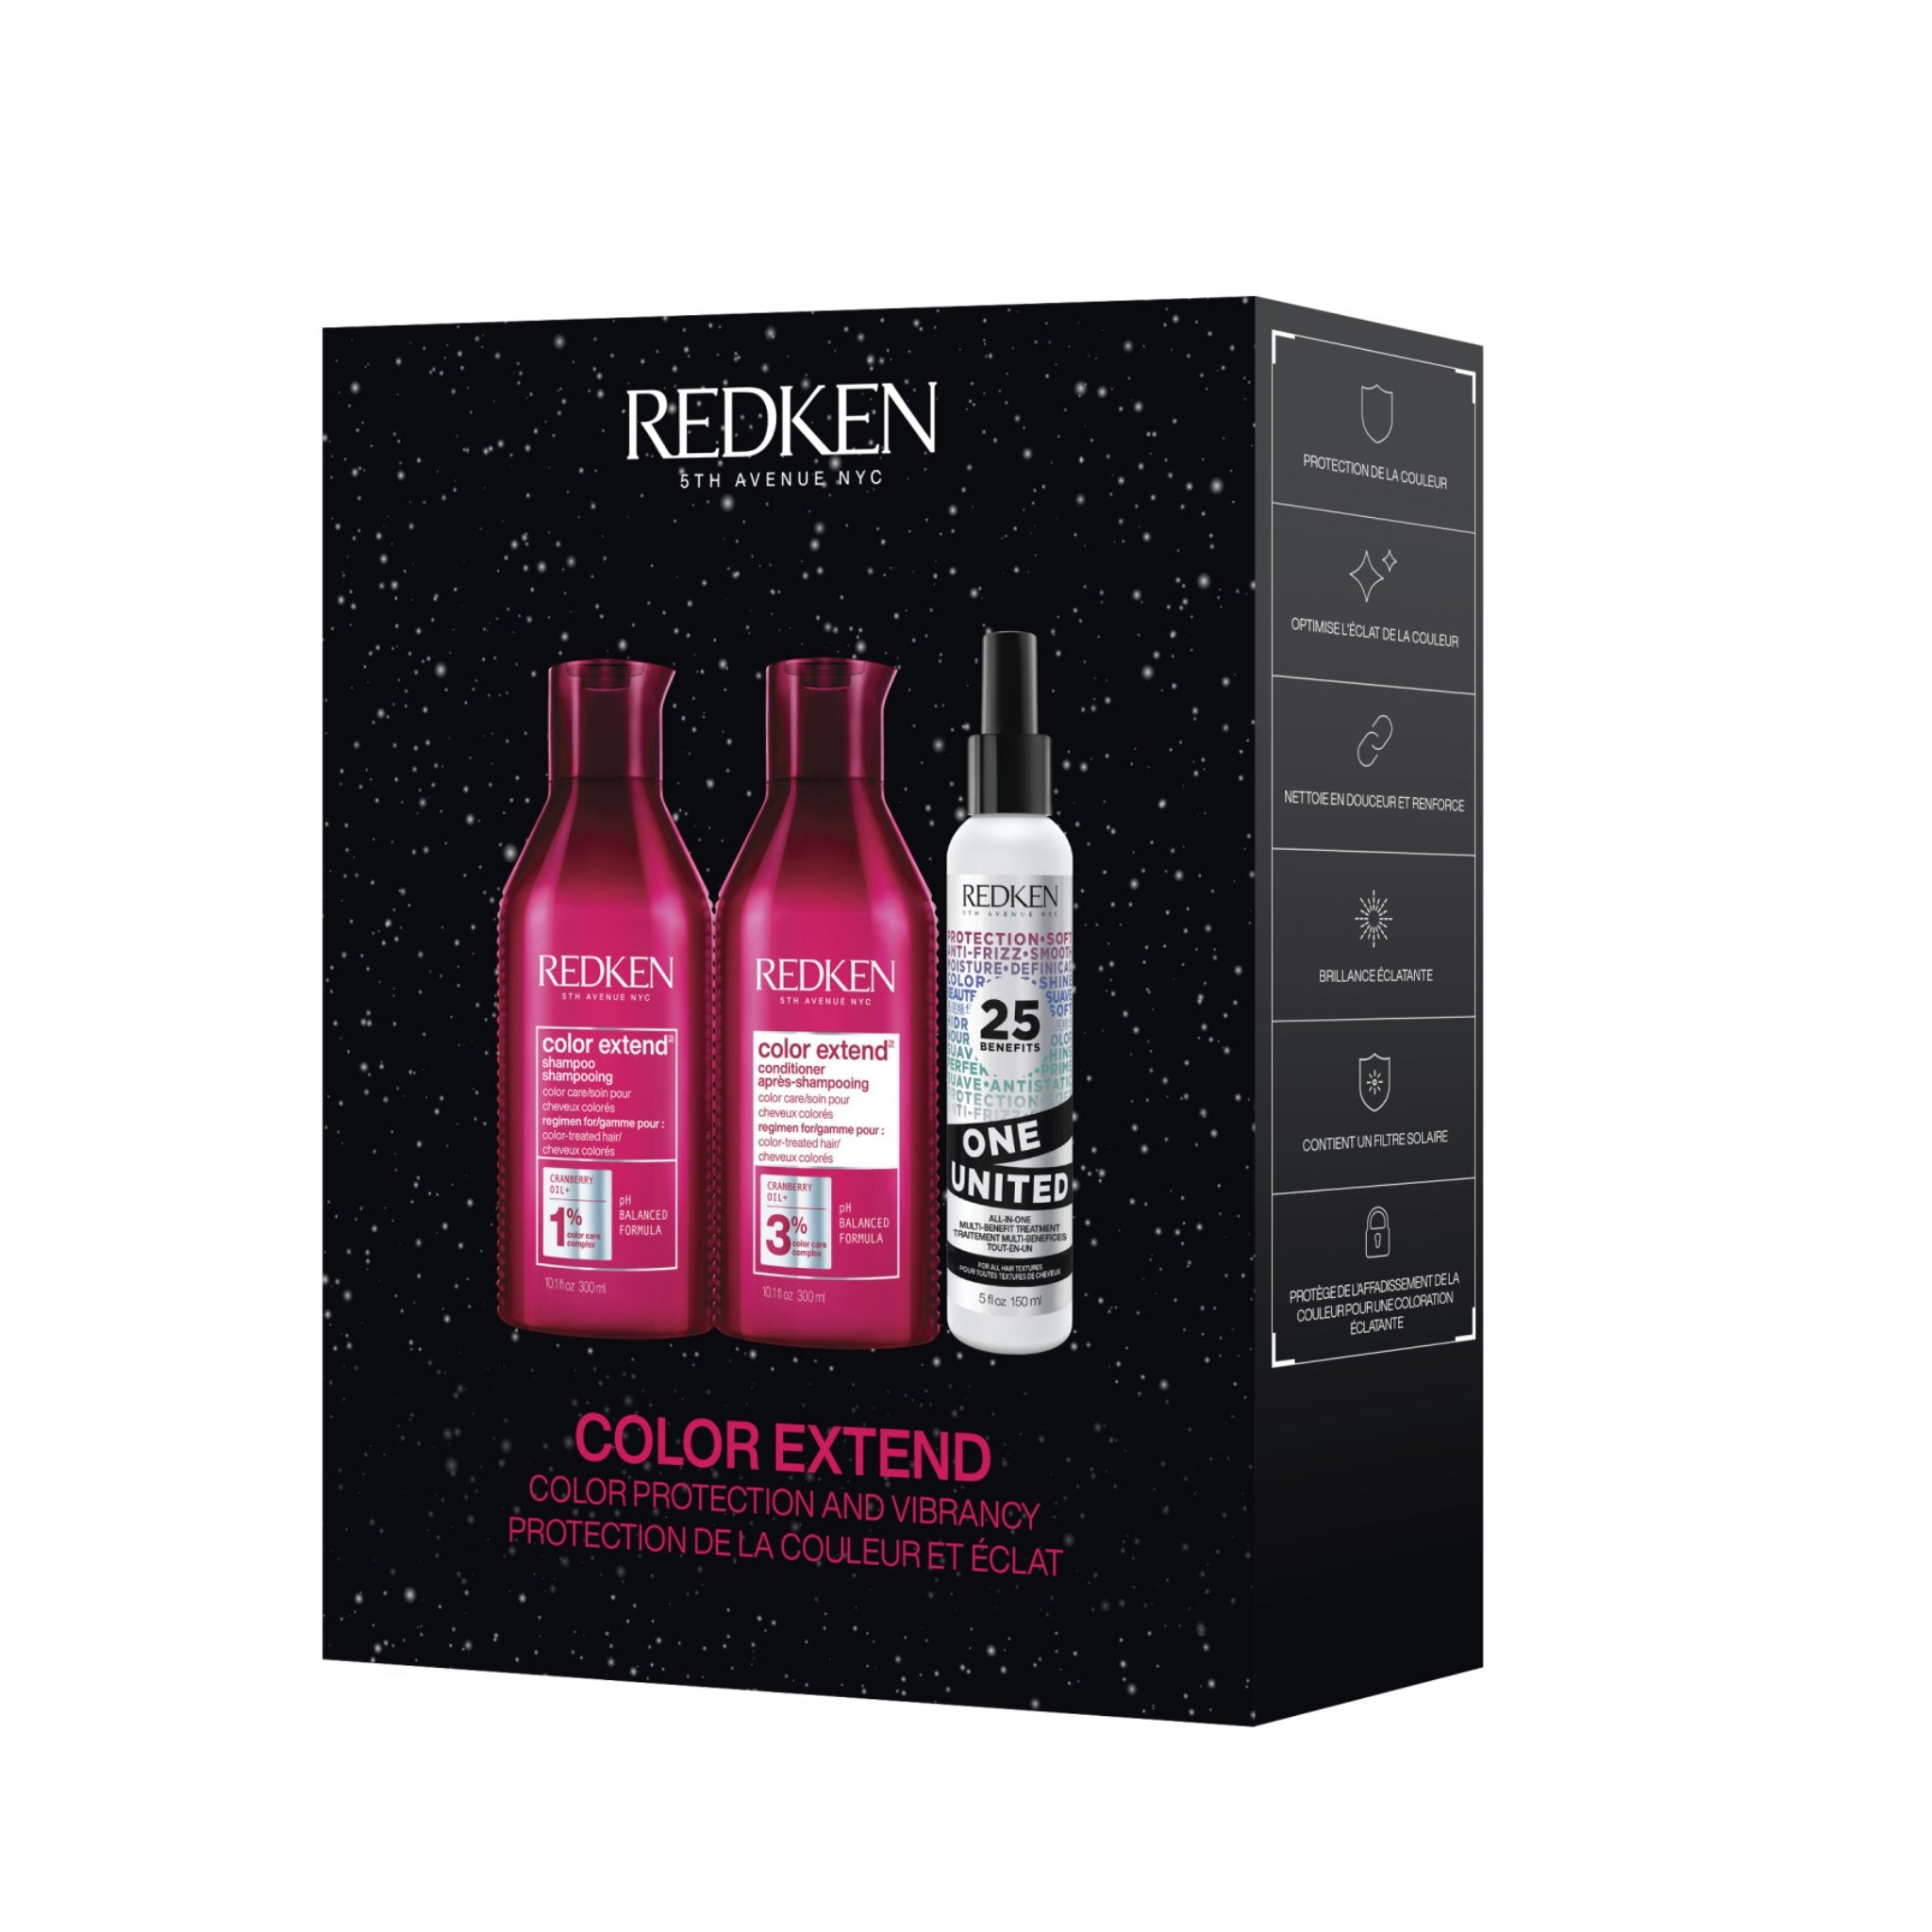 Redken. Coffret - Color Extend - Concept C. Shop